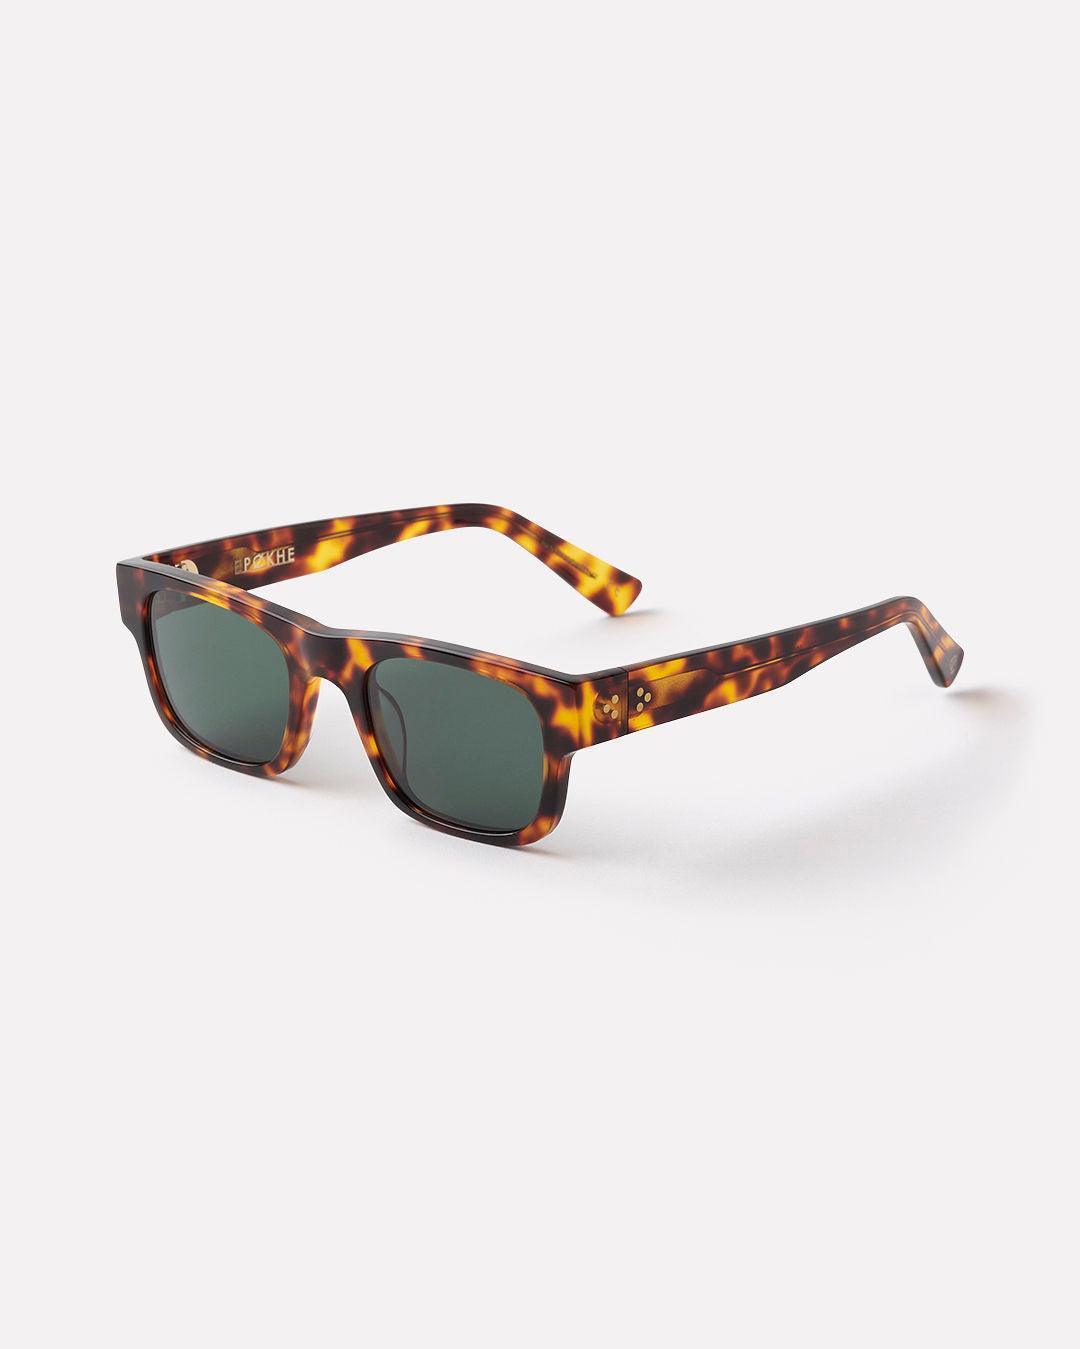 Uzi - Tortoise Polished / Green - Sunglasses - EPOKHE EYEWEAR